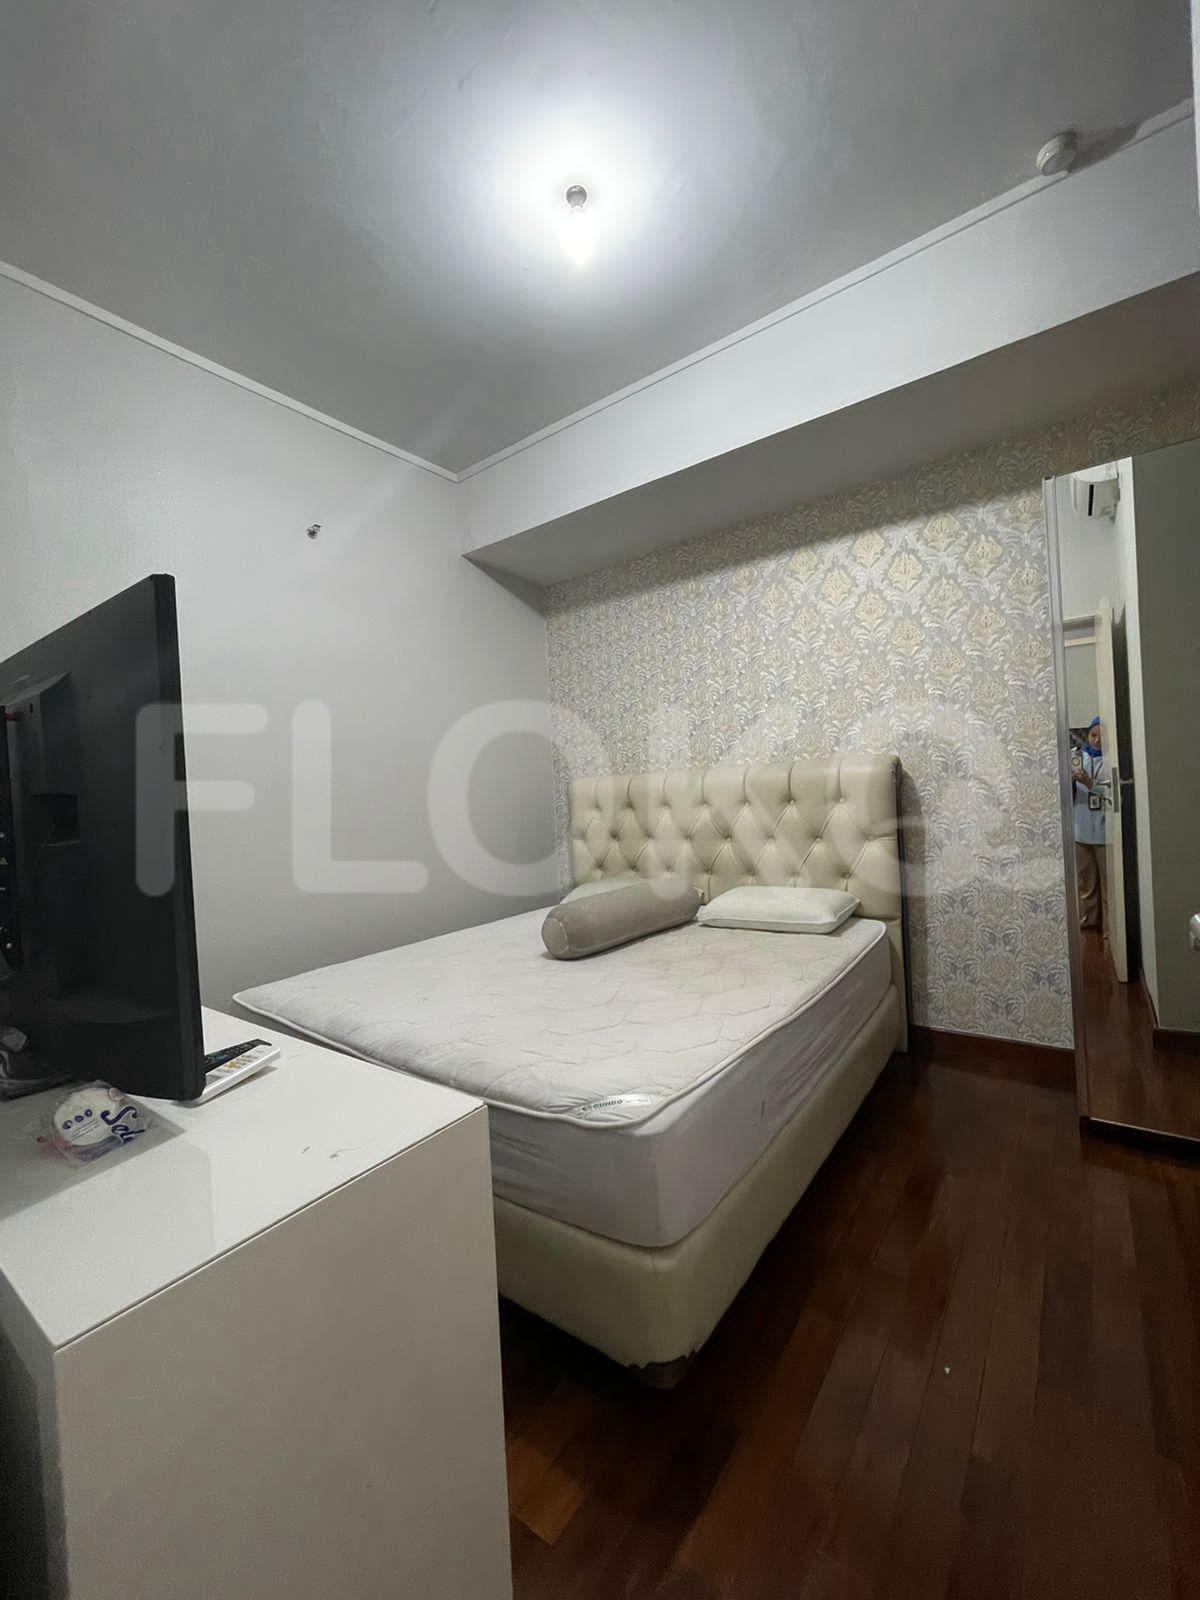 Sewa Apartemen Seasons City Apartemen Tipe 2 Kamar Tidur di Lantai 18 fgr243